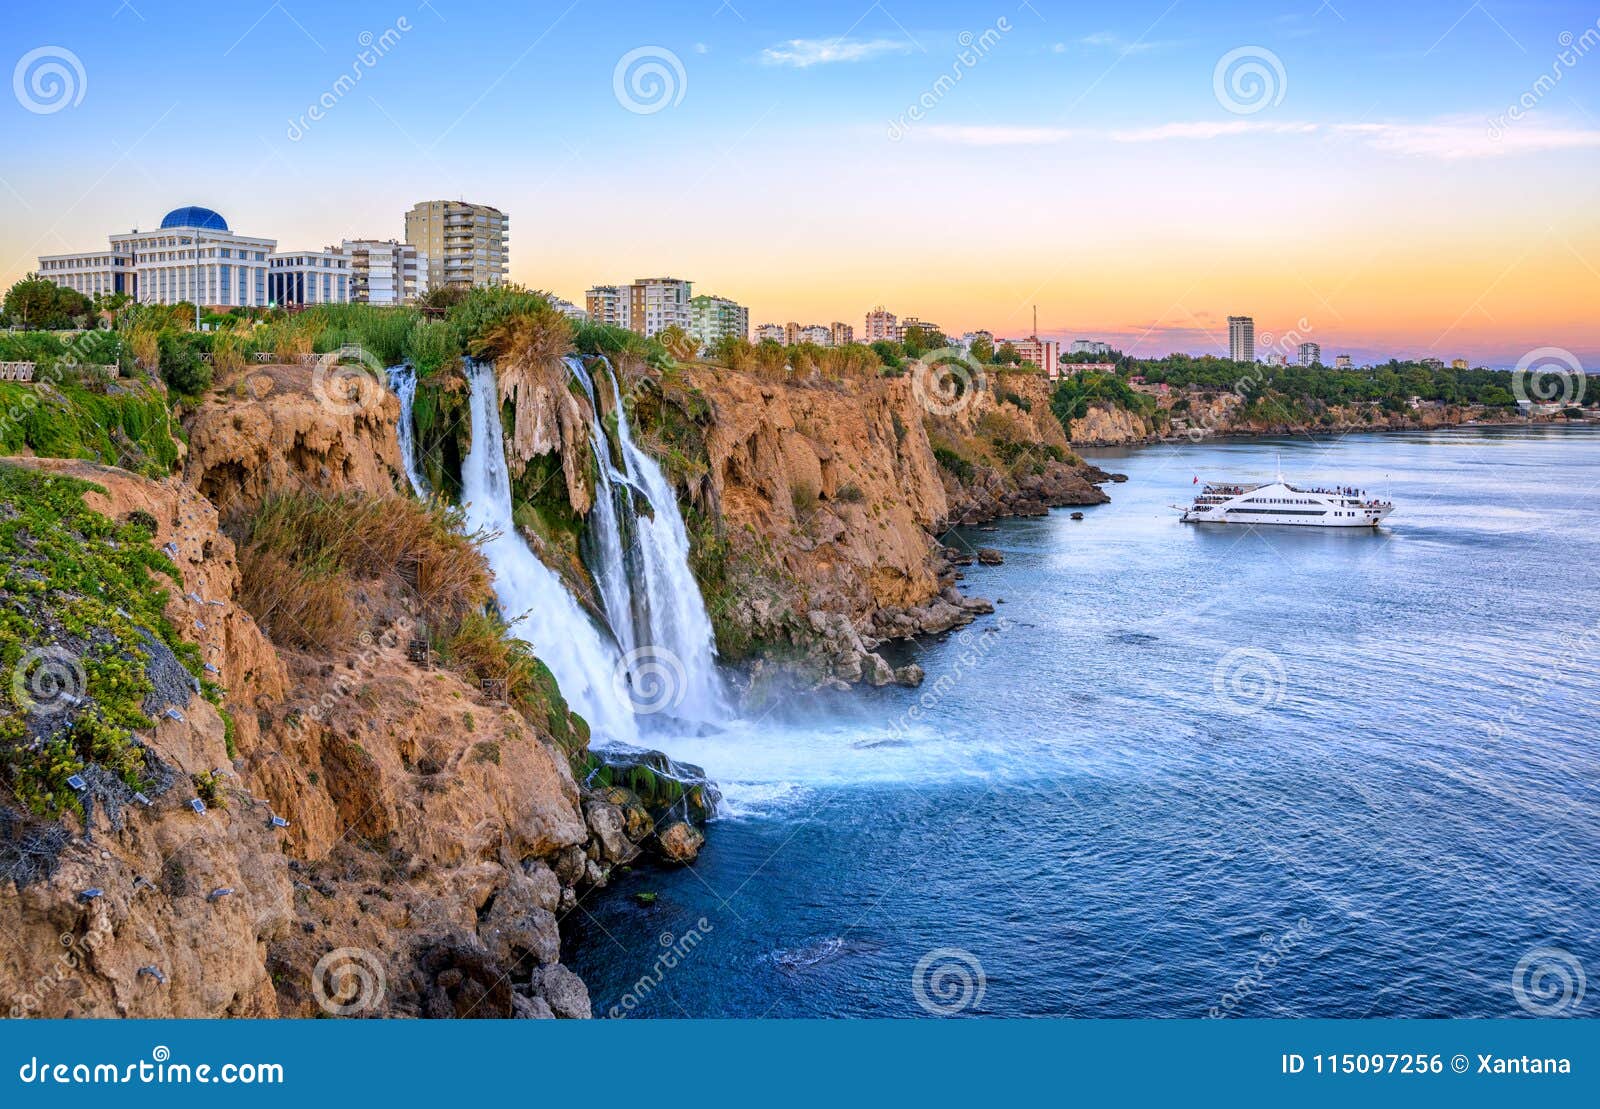 duden coast waterfalls, antalya, turkey, on sunset